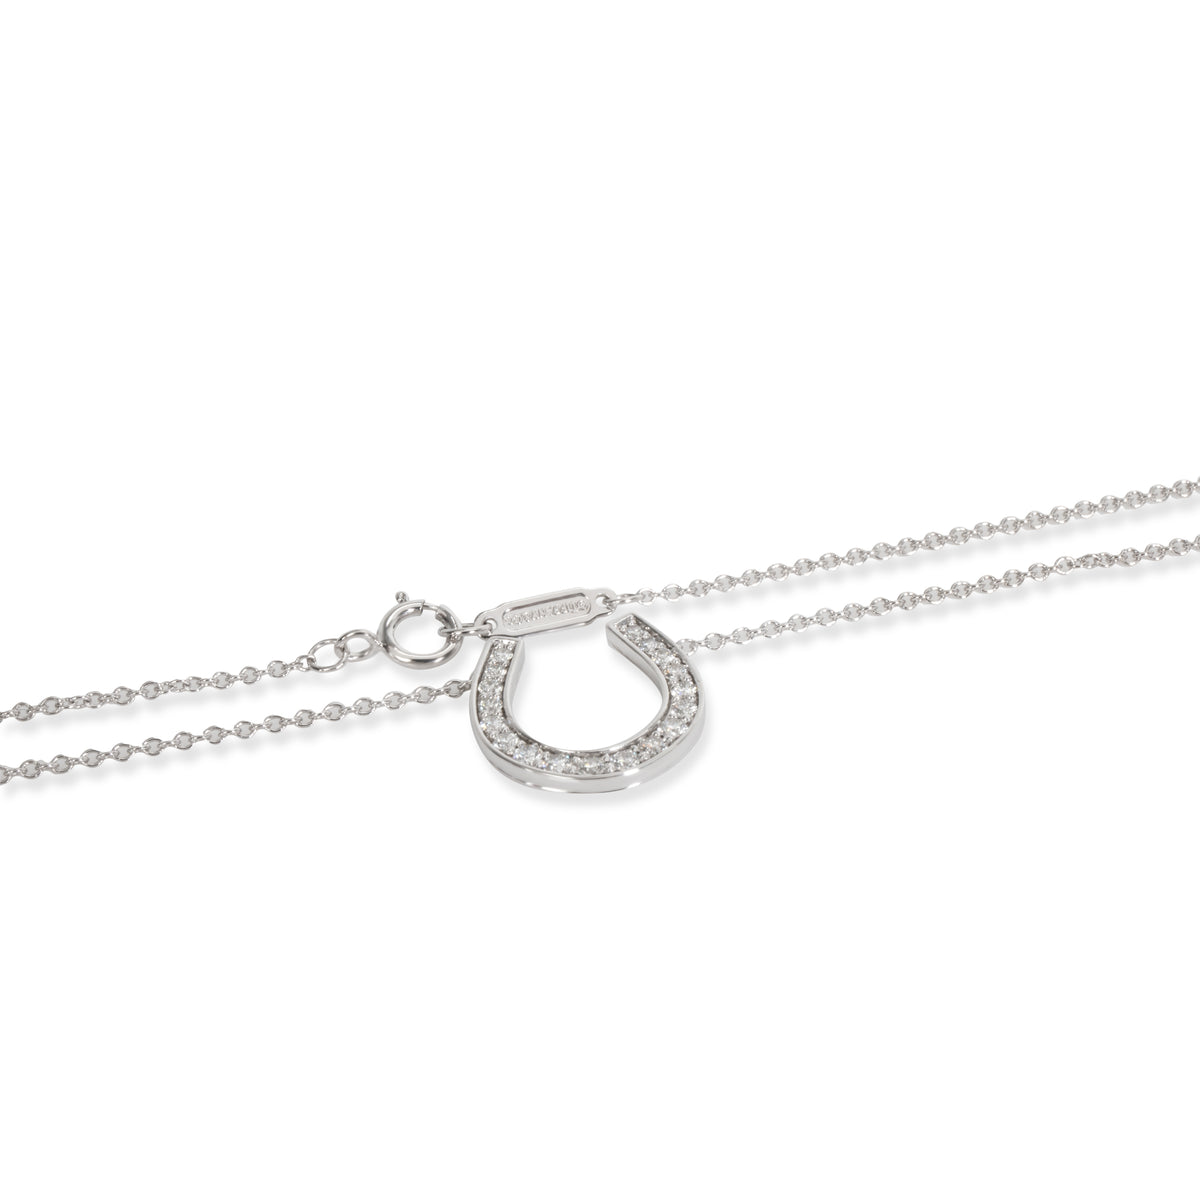 Tiffany & Co. Diamond Horseshoe Necklace in Platinum